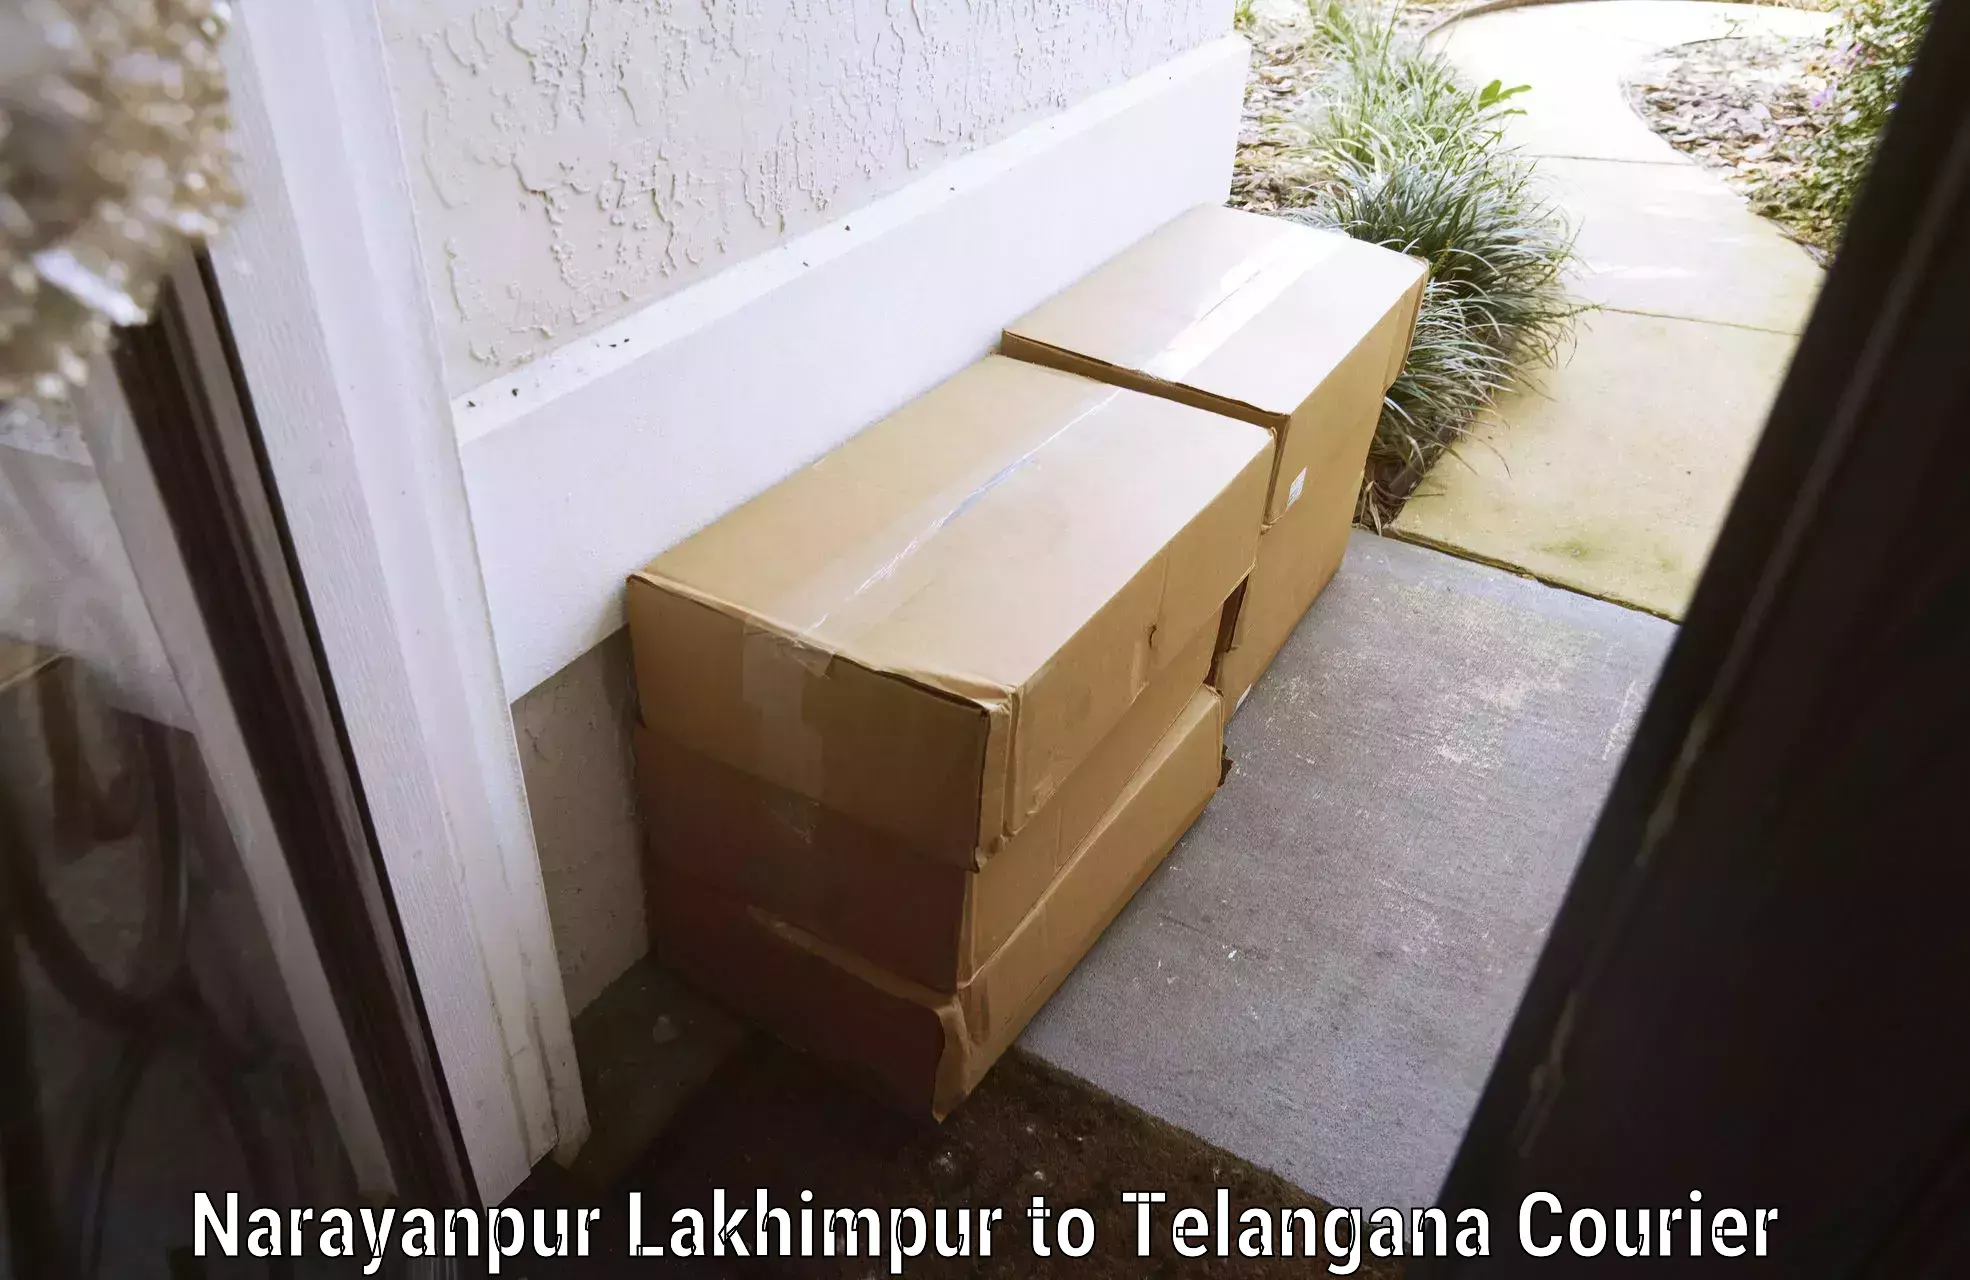 Baggage transport coordination Narayanpur Lakhimpur to Suryapet